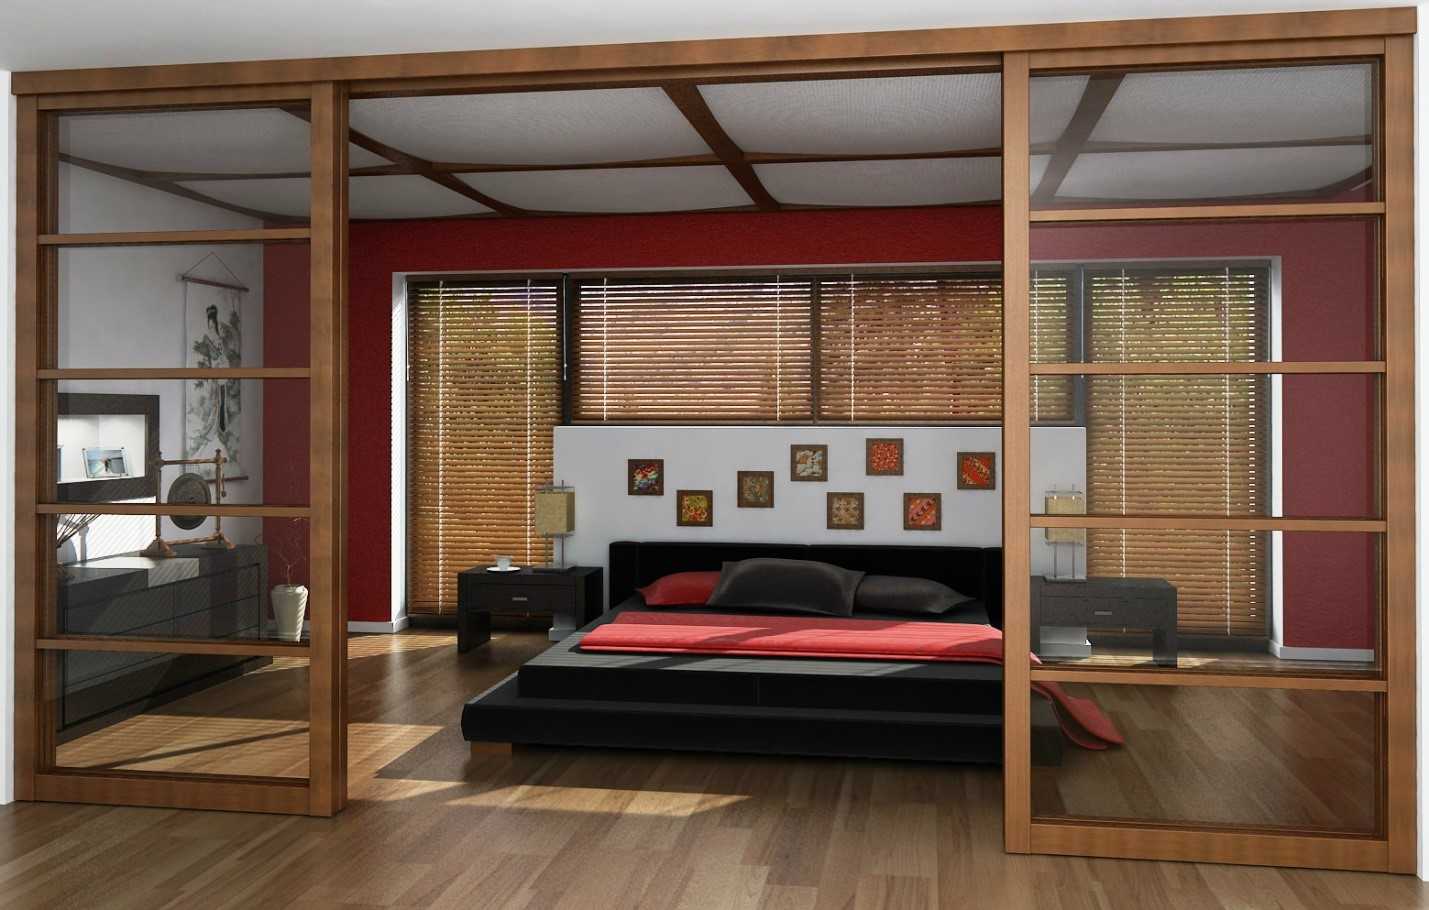 Раздвижные перегородки для зонирования пространства в комнате: варианты использования | советы специалистов